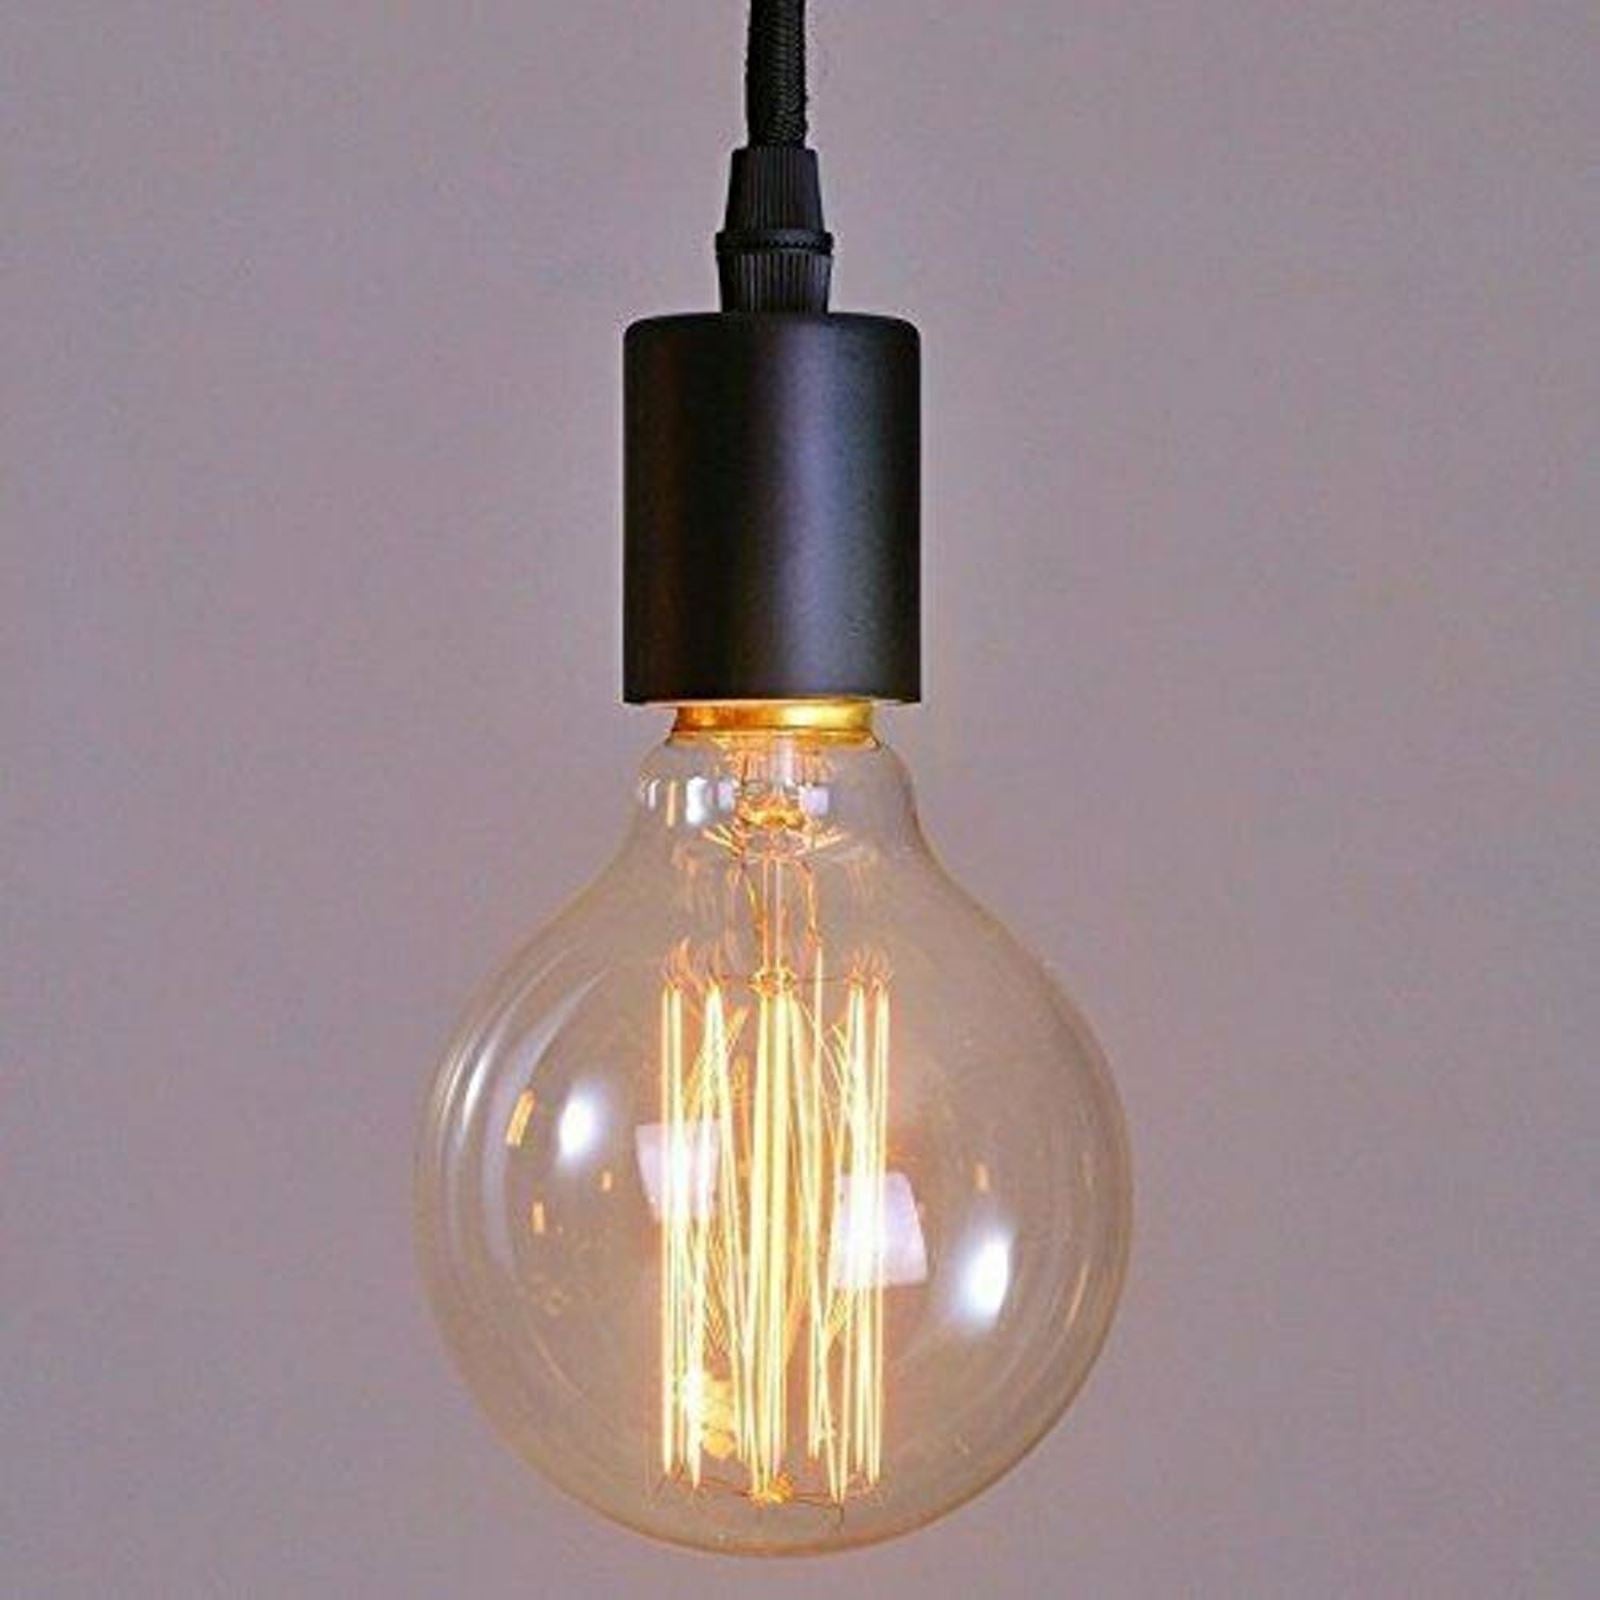 Vintage Industrial Filament Eichhörnchenkäfig Antik-Stil Edison GlühbirneS